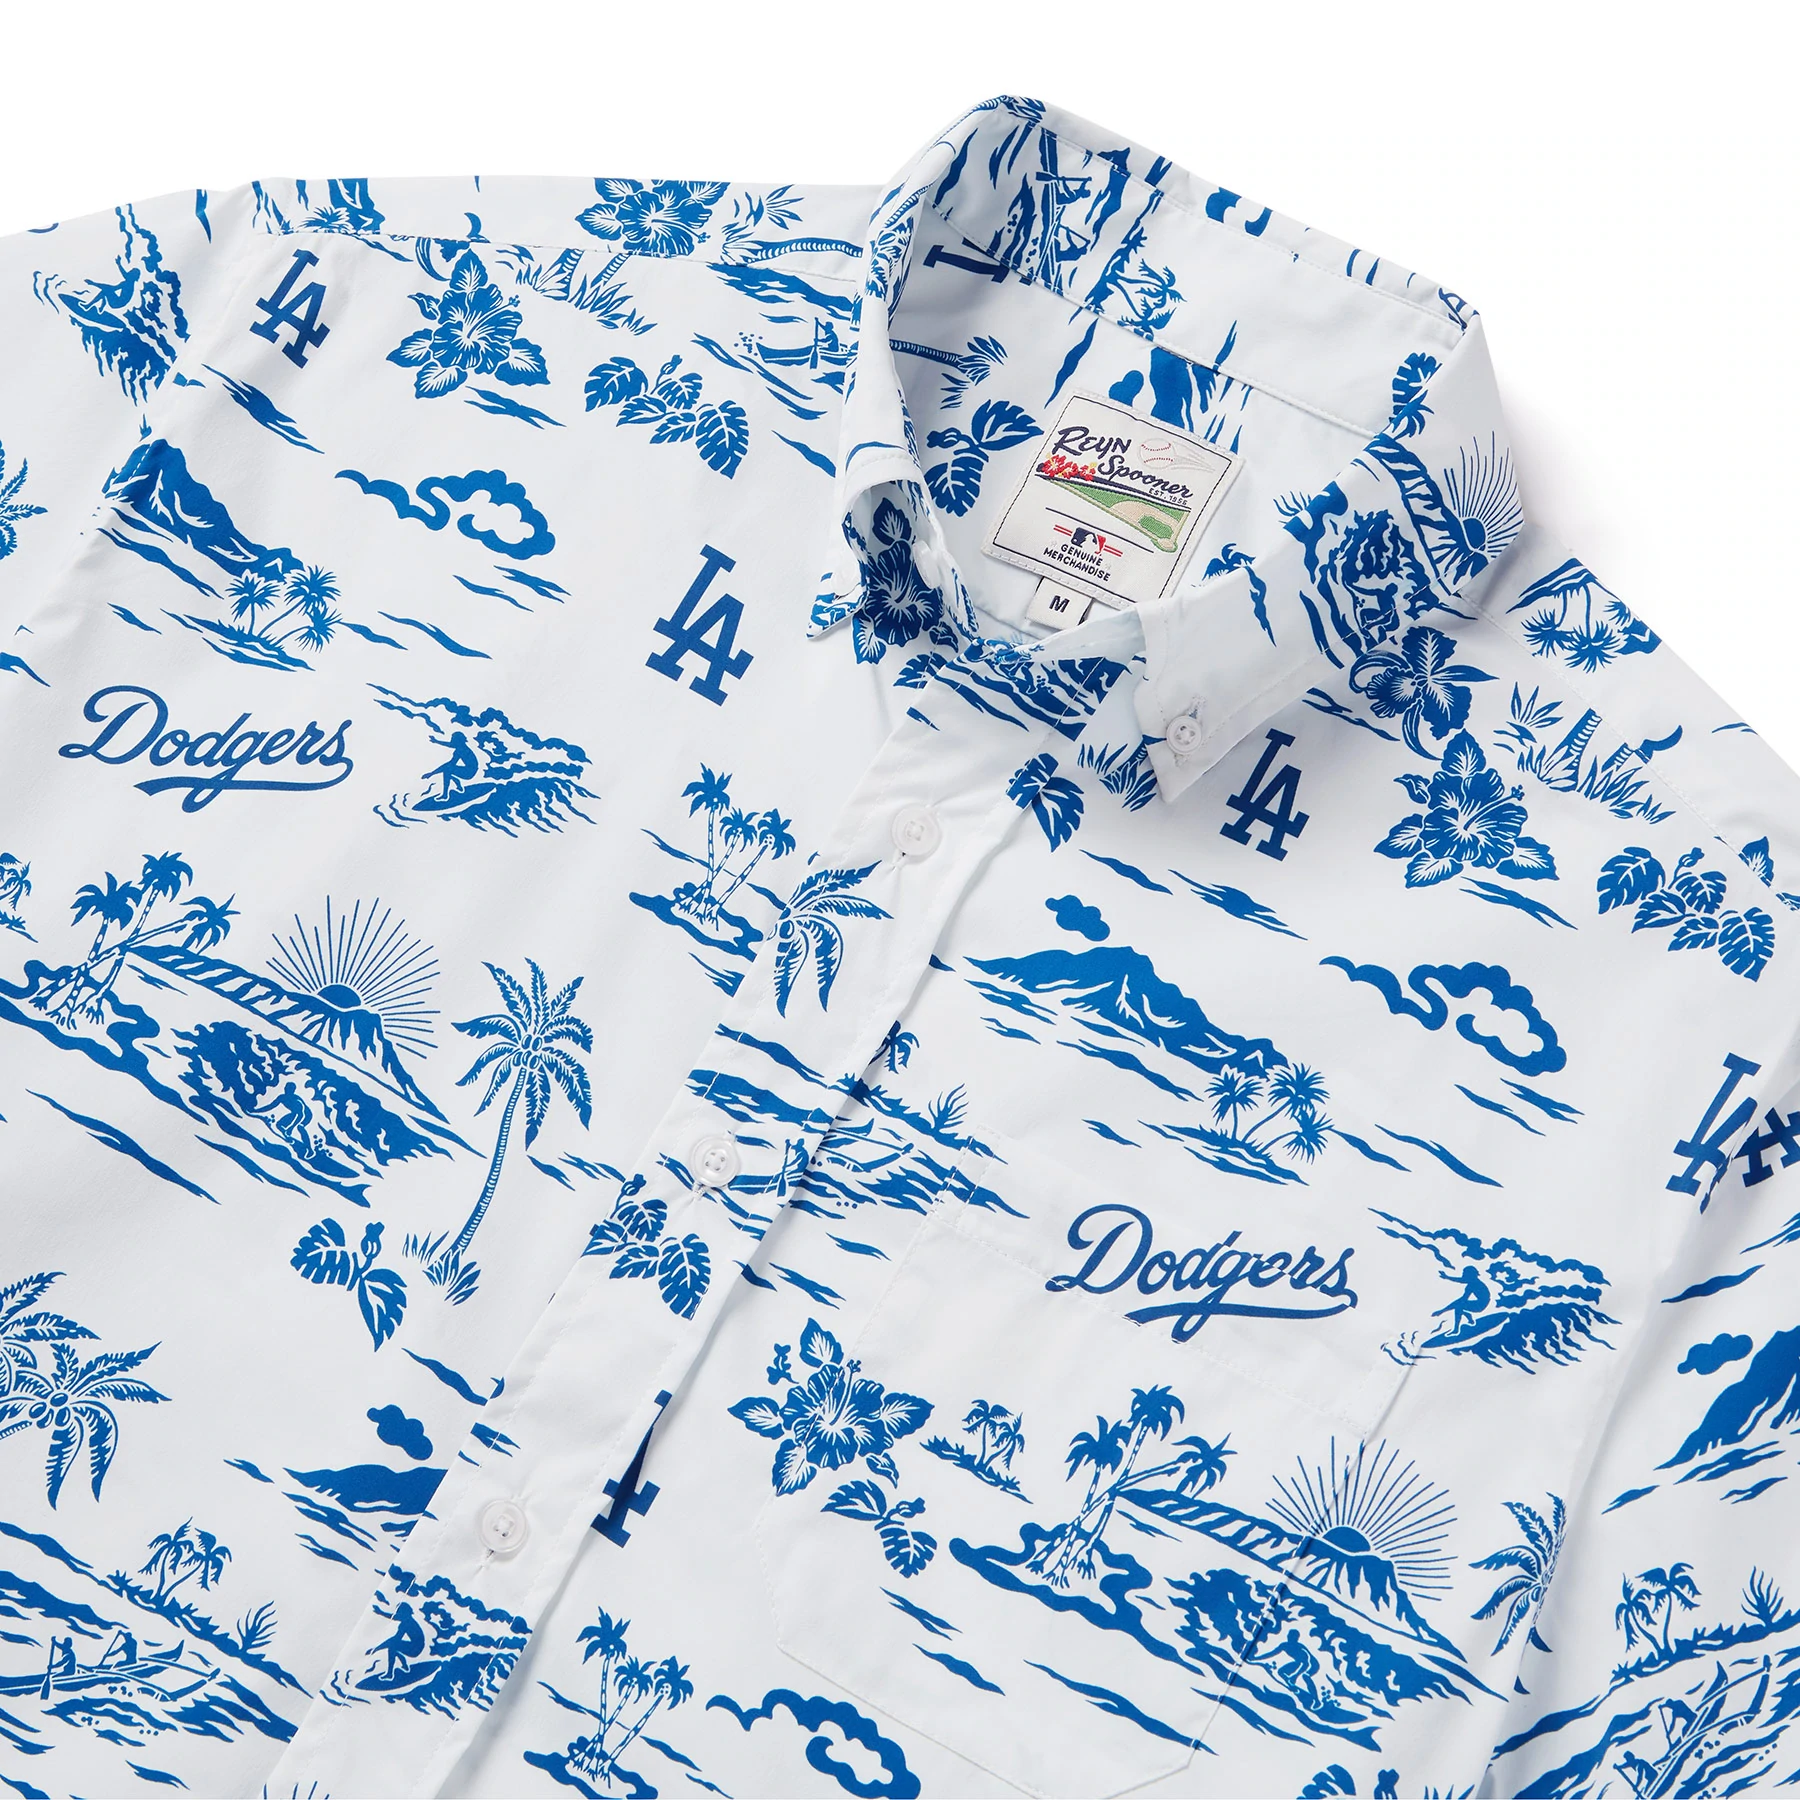 LA Dodgers Camp White T-Shirt